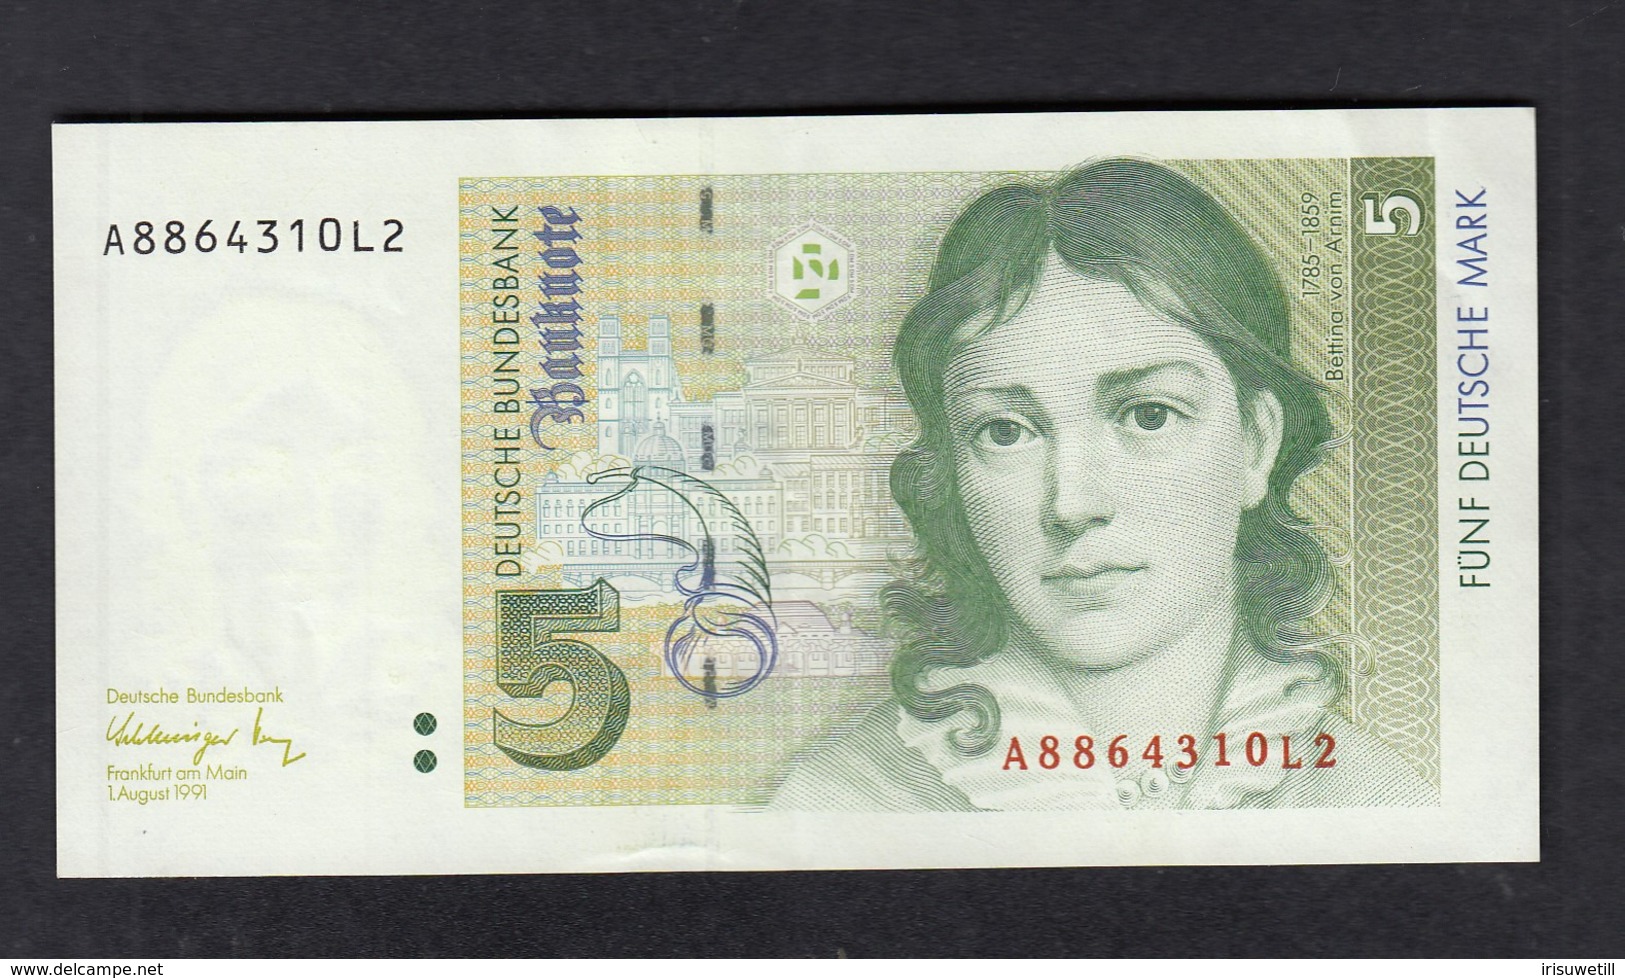 Banknote Deutsche Bundesbank 1991 / 5 DM - 5 Deutsche Mark